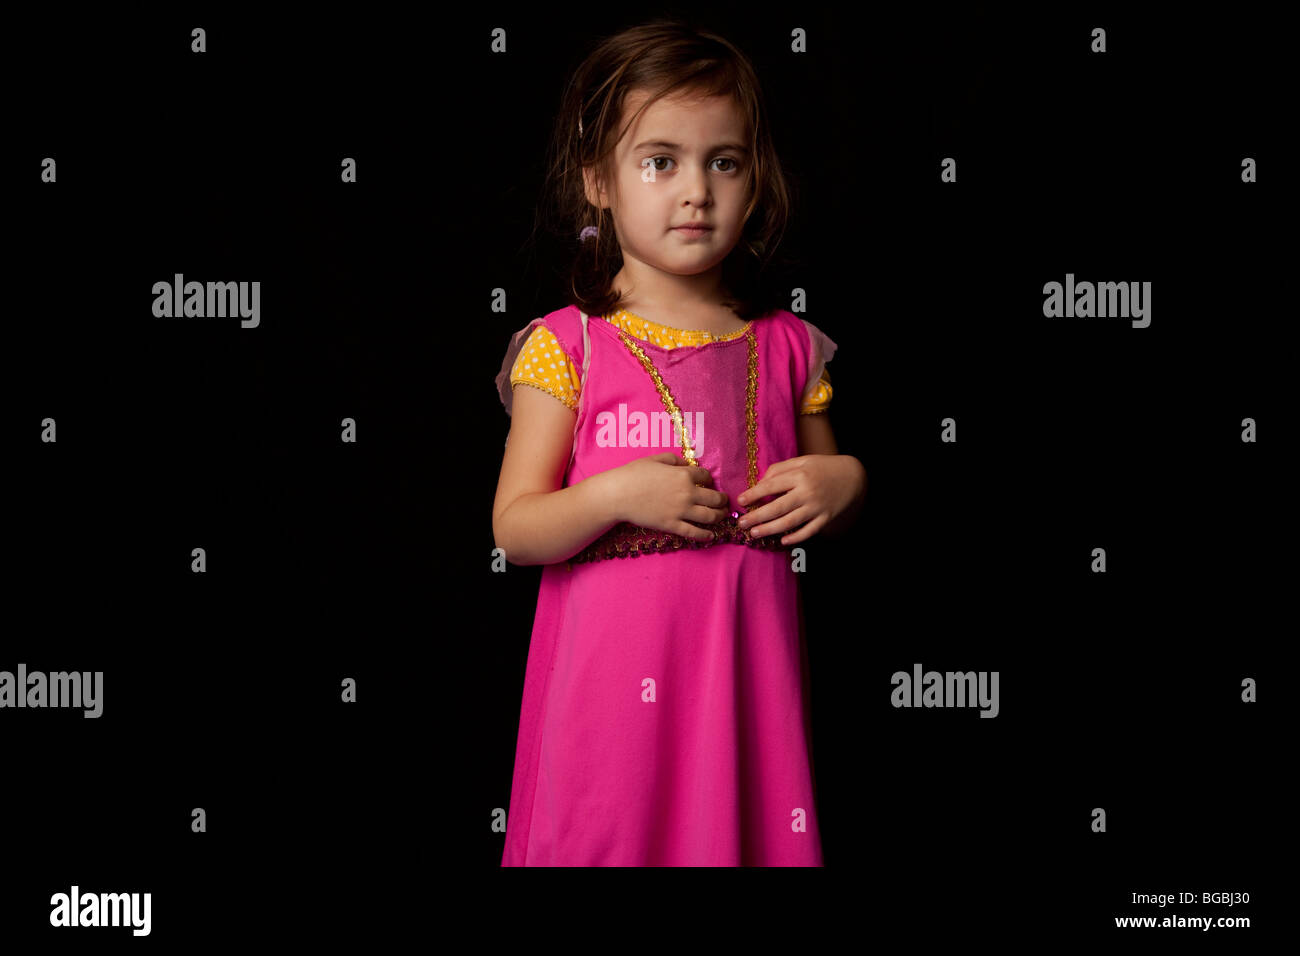 4 anno vecchia ragazza in dark pind dress guardando la fotocamera Foto Stock